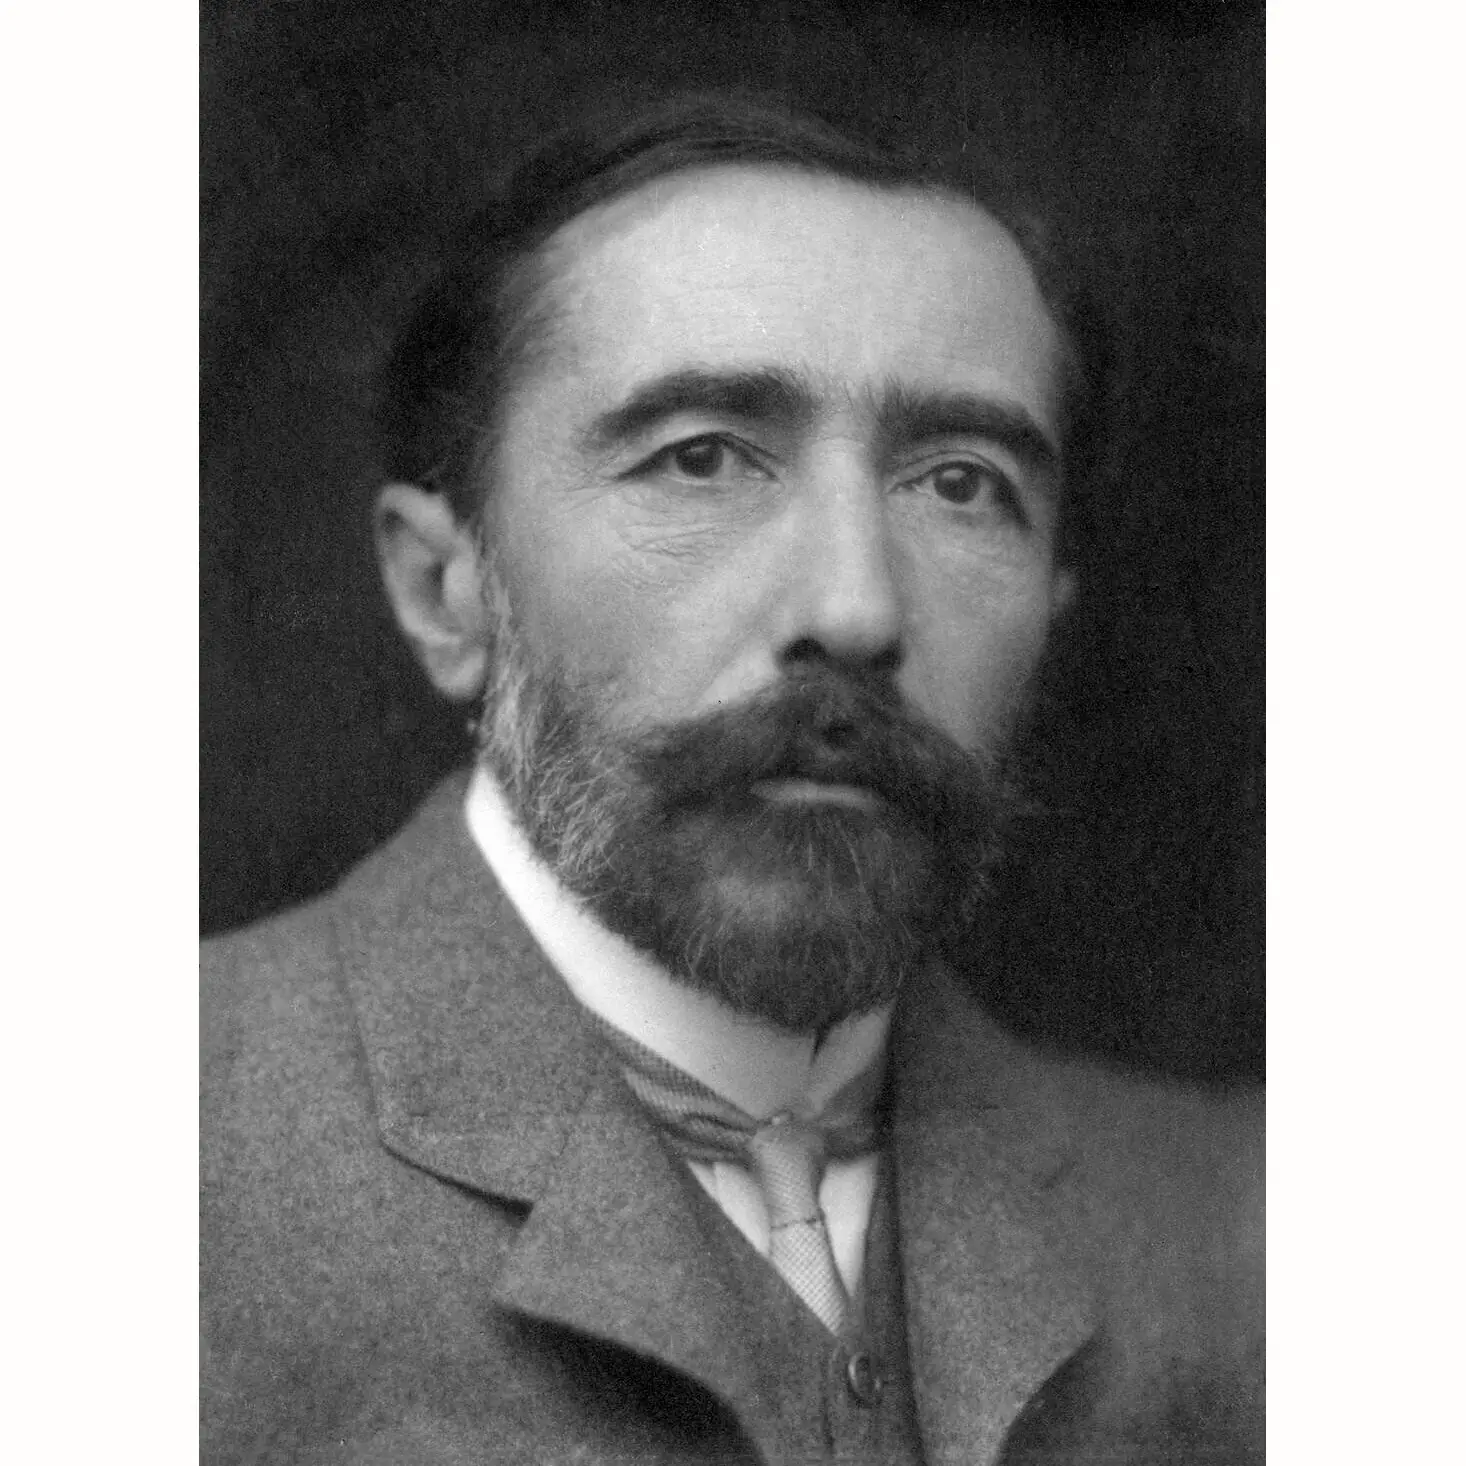 Photo of Joseph Conrad - 1904